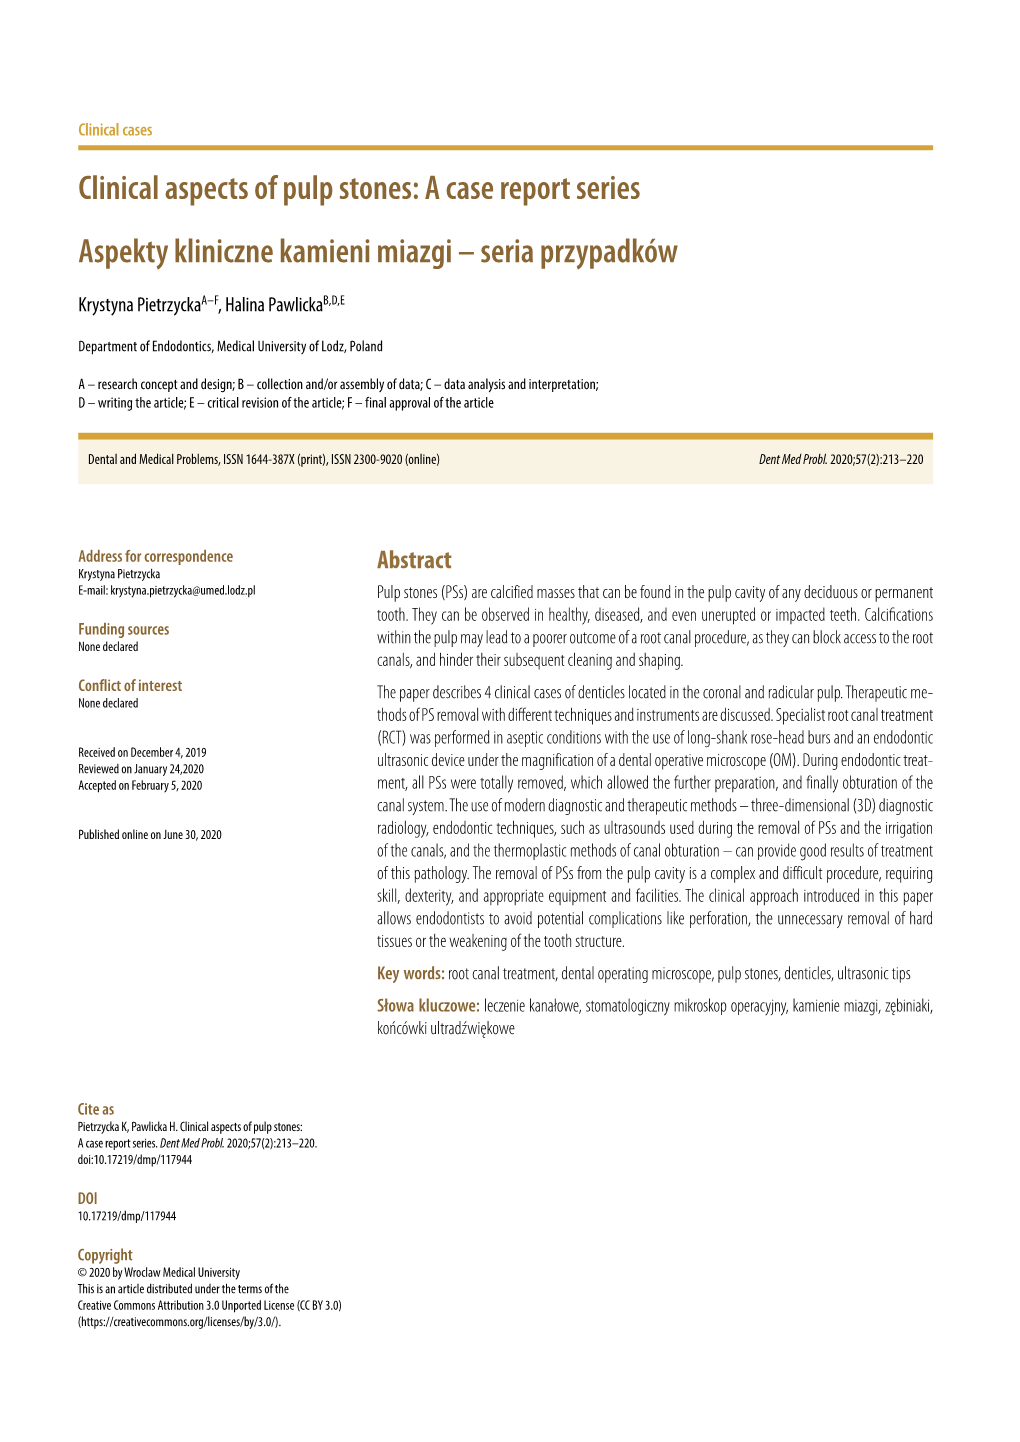 Clinical Aspects of Pulp Stones: a Case Report Series Aspekty Kliniczne Kamieni Miazgi – Seria Przypadków